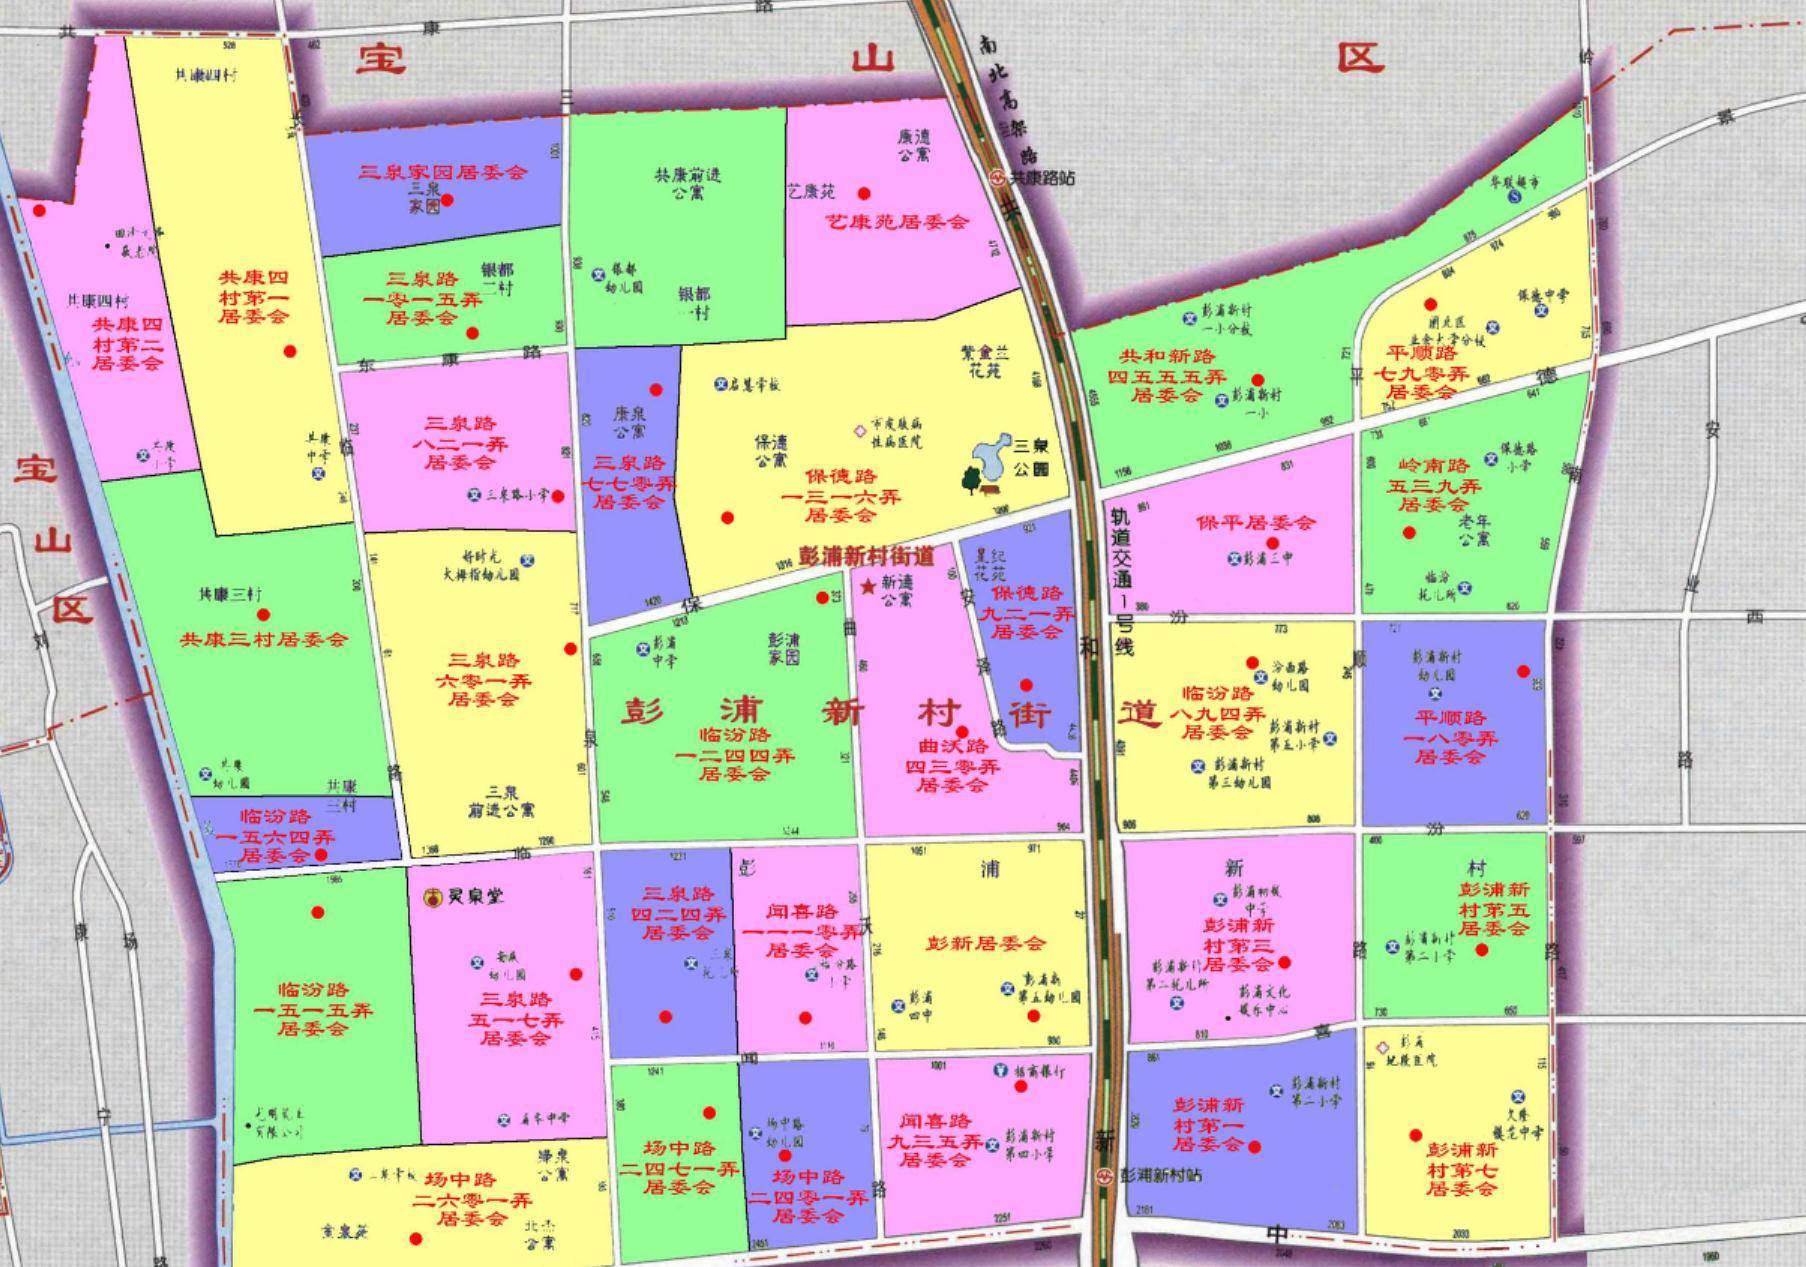 上海市静安区重名的行政区划:彭浦镇,彭浦新村两地同为乡级区划